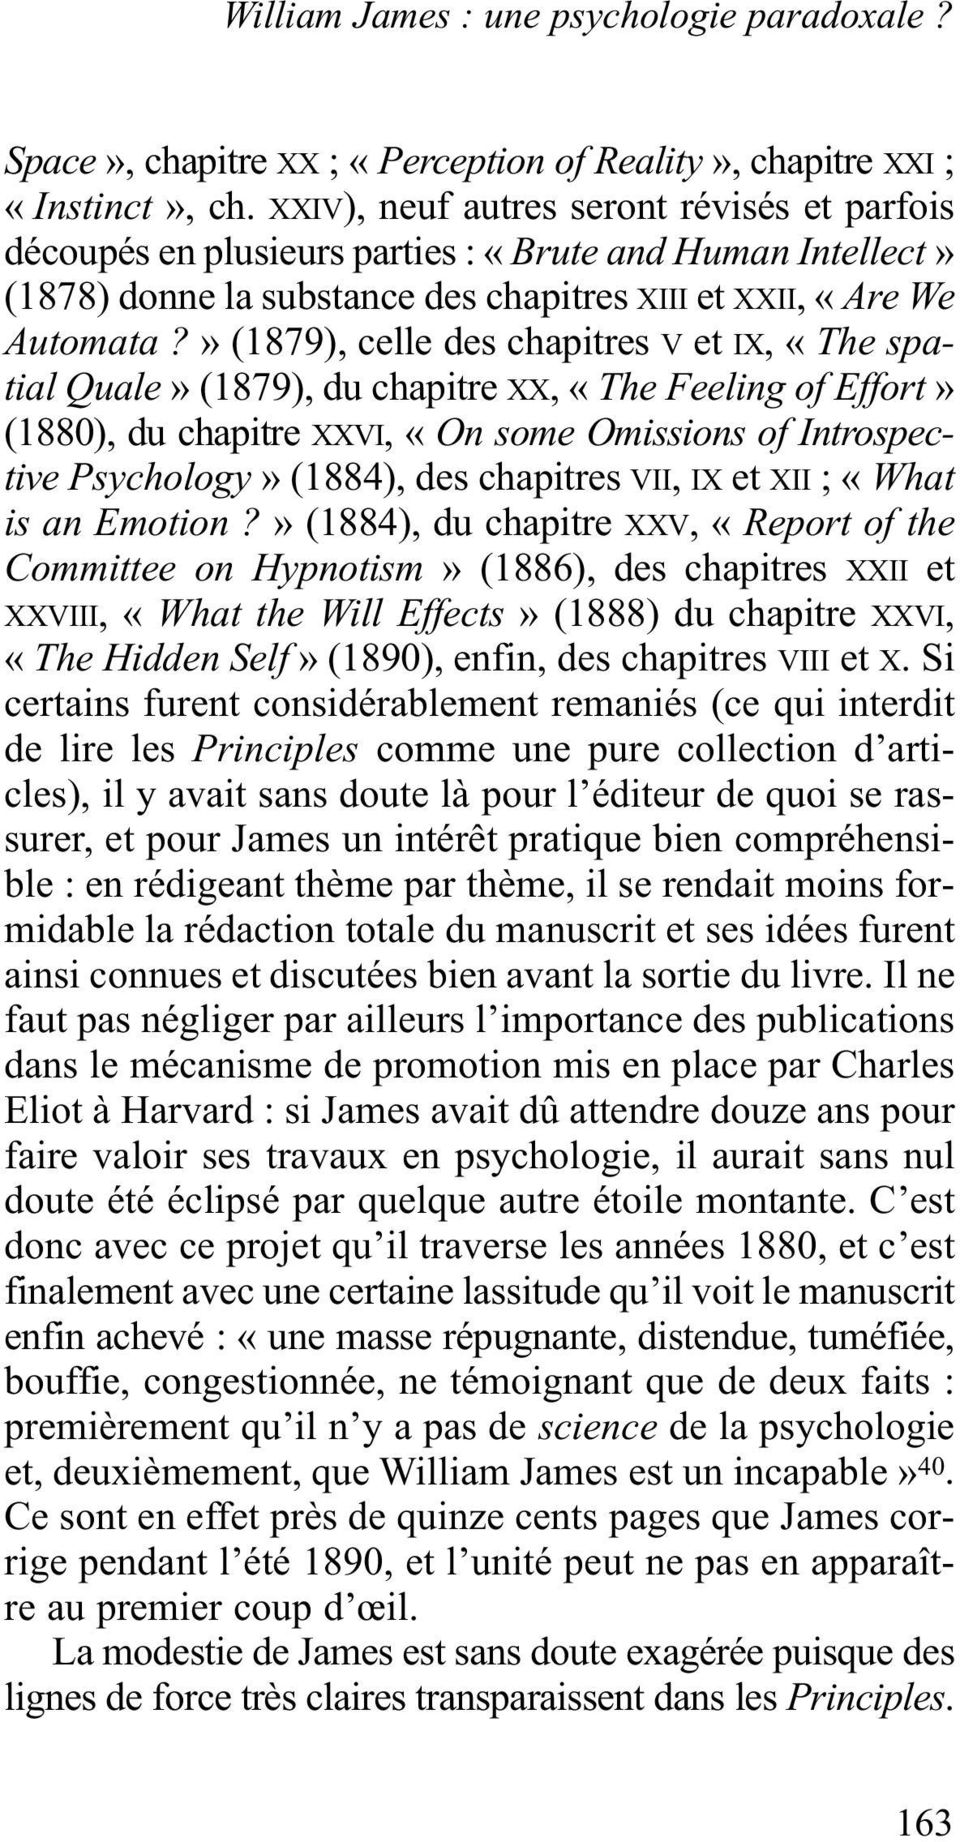 » (1879), celle des chapitres V et IX, «The spatial Quale» (1879), du chapitre XX, «The Feeling of Effort» (1880), du chapitre XXVI, «On some Omissions of Introspective Psychology» (1884), des